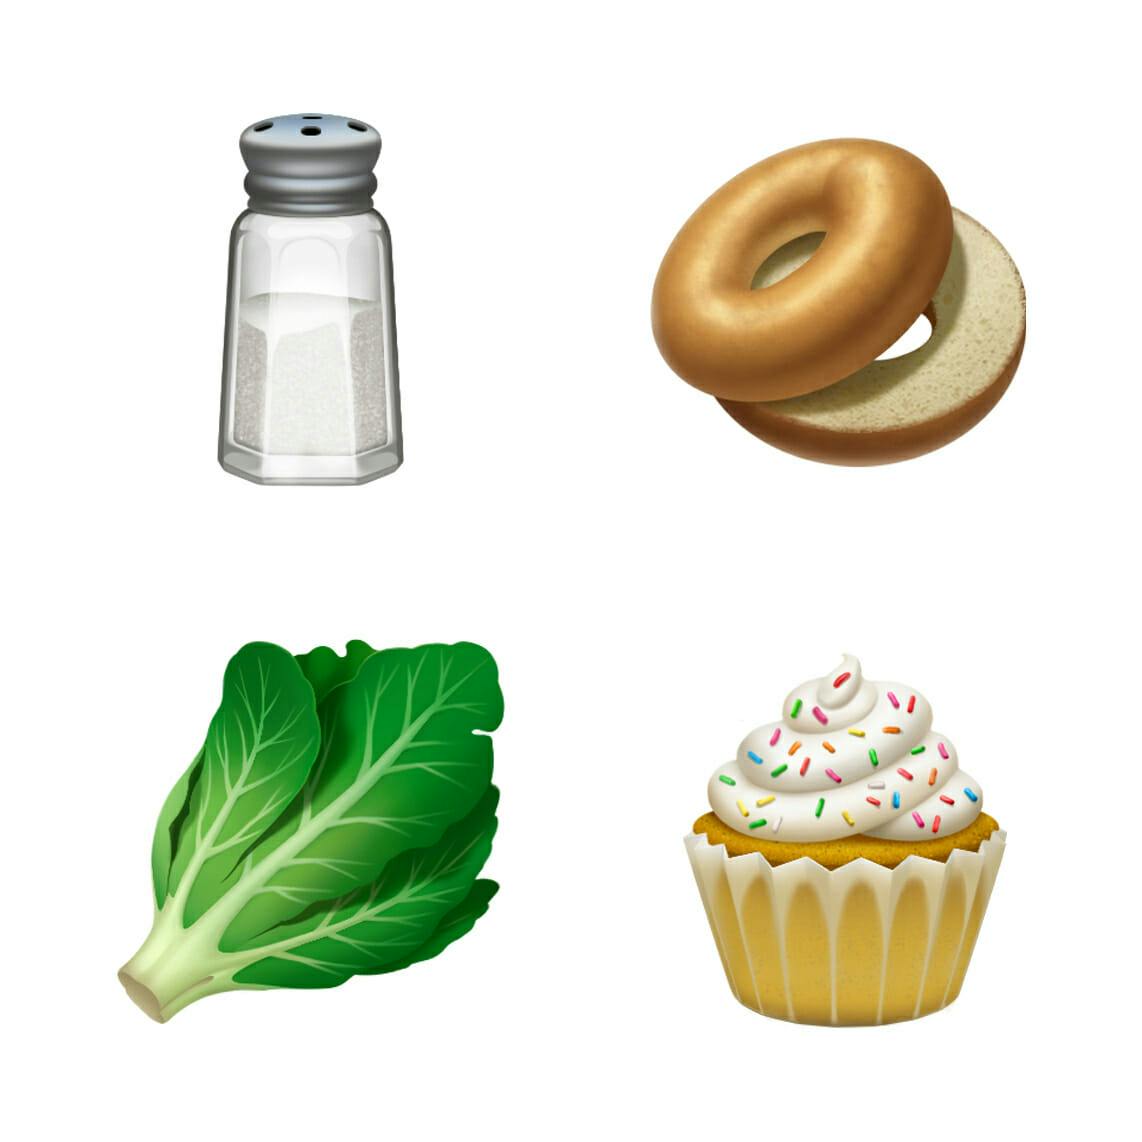 iOS is getting a bagel emoji, finally.